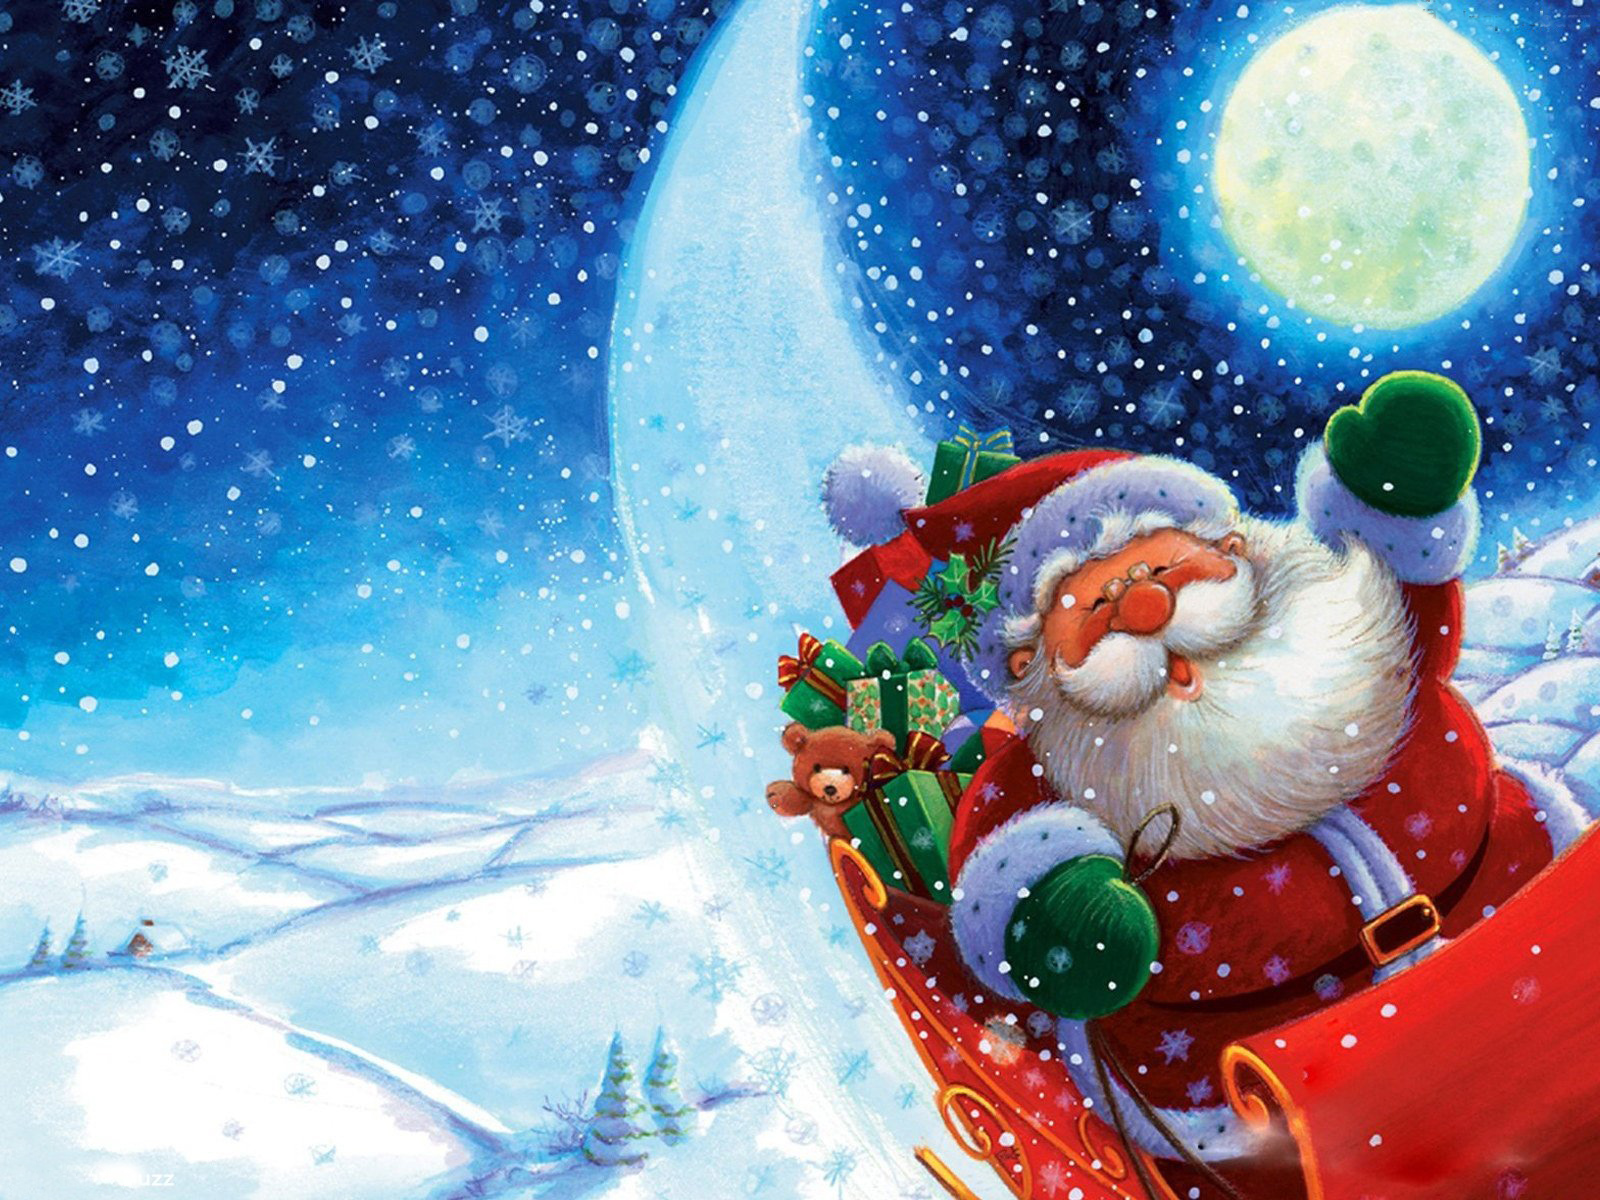 http://2.bp.blogspot.com/-Rf4NlbyClN4/TvEPh4PLpdI/AAAAAAAARZo/SBR6hNAlD-A/s1600/Santa-Sleighing-Funny-Wallpaper.jpg